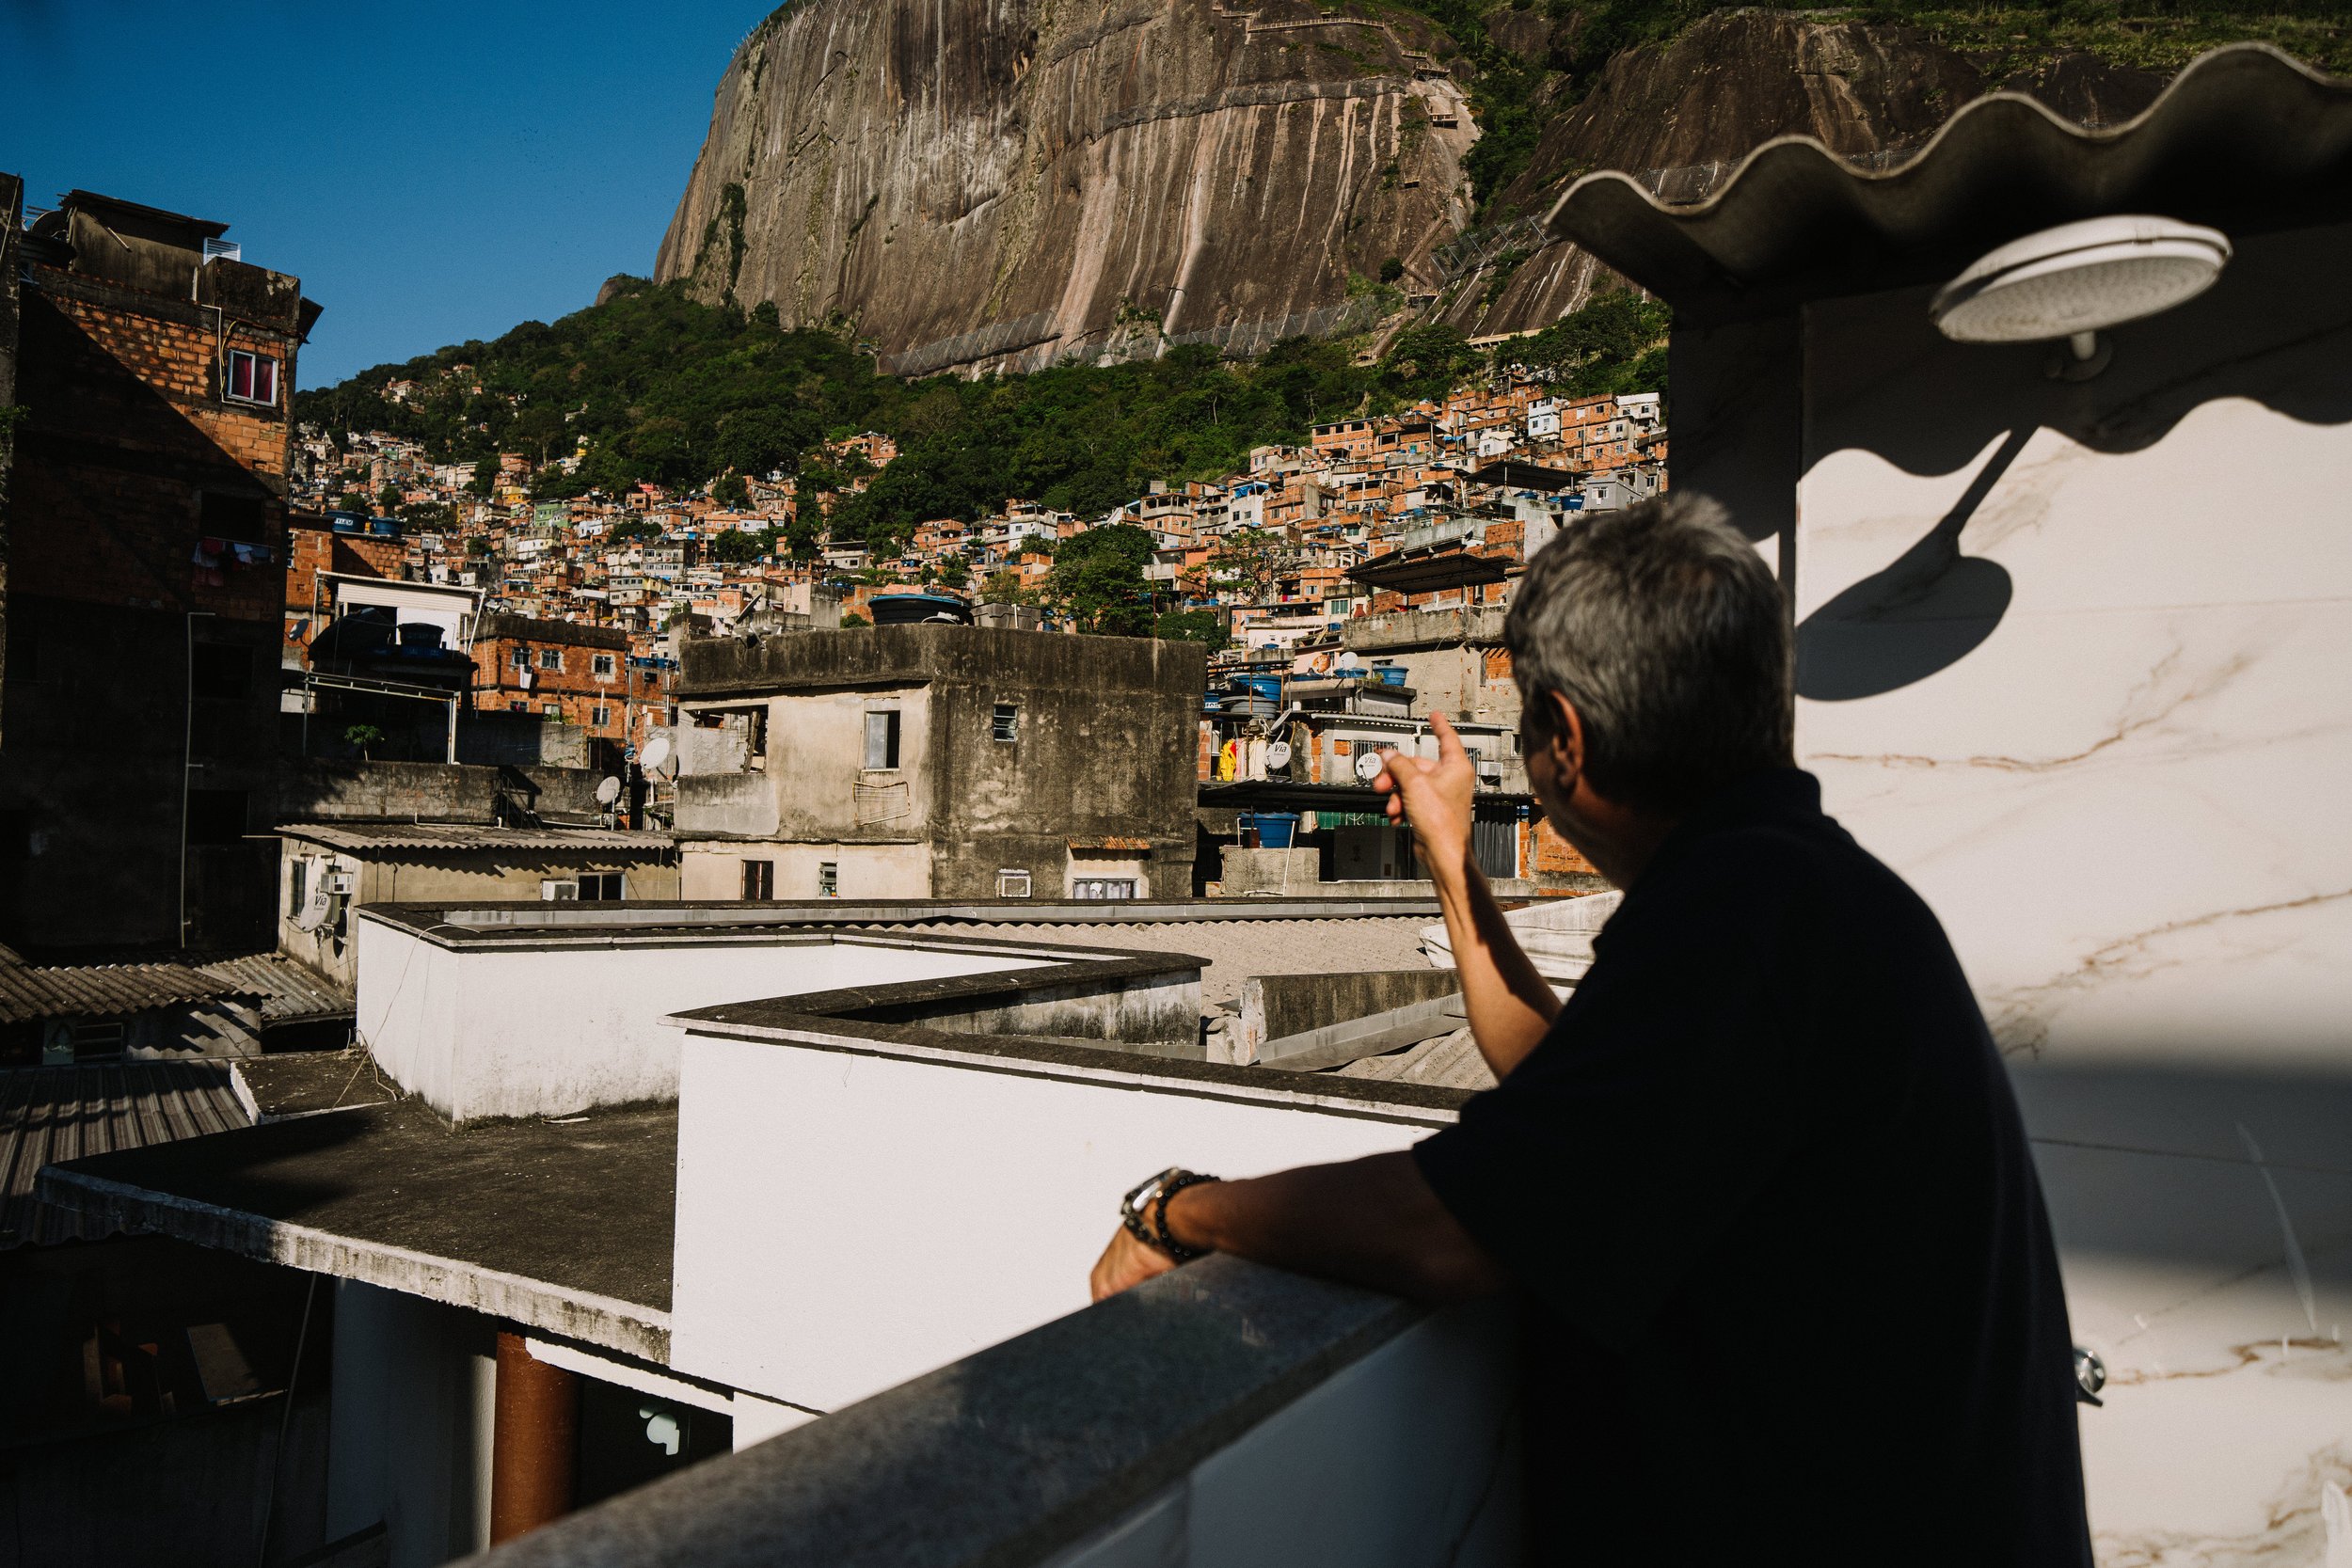 favela-da-rocinha-rio-de-janeiro-guia-turistico-para-favela-ricardo-franzen-producao-de-filme-documentario-educacao-na-favela-rio-de-janeiro-rocinha-14.jpg